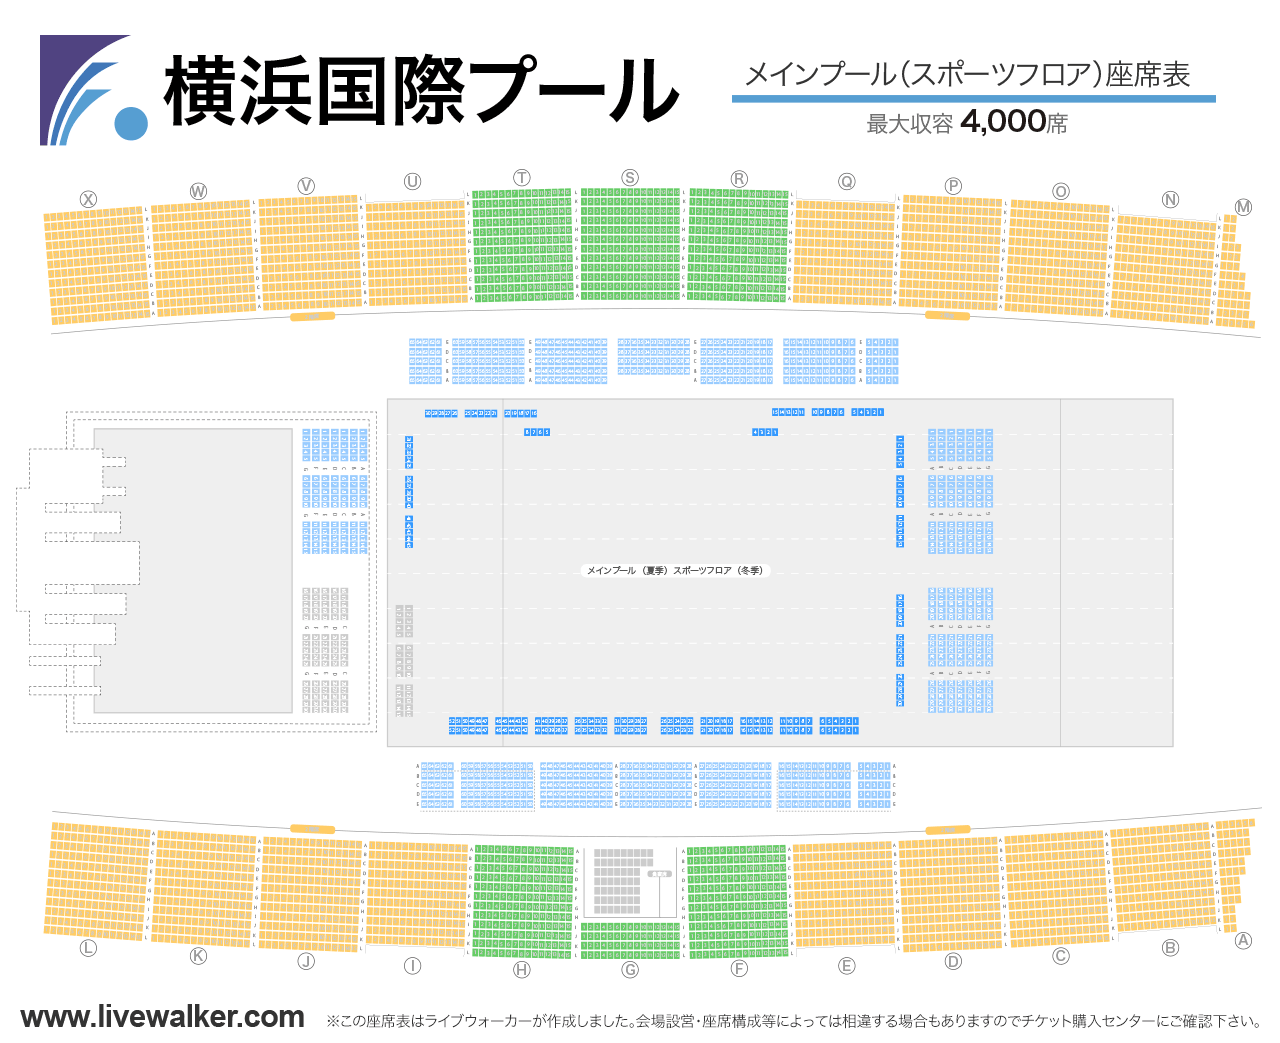 横浜国際プールメインプール（スポーツフロア）の座席表